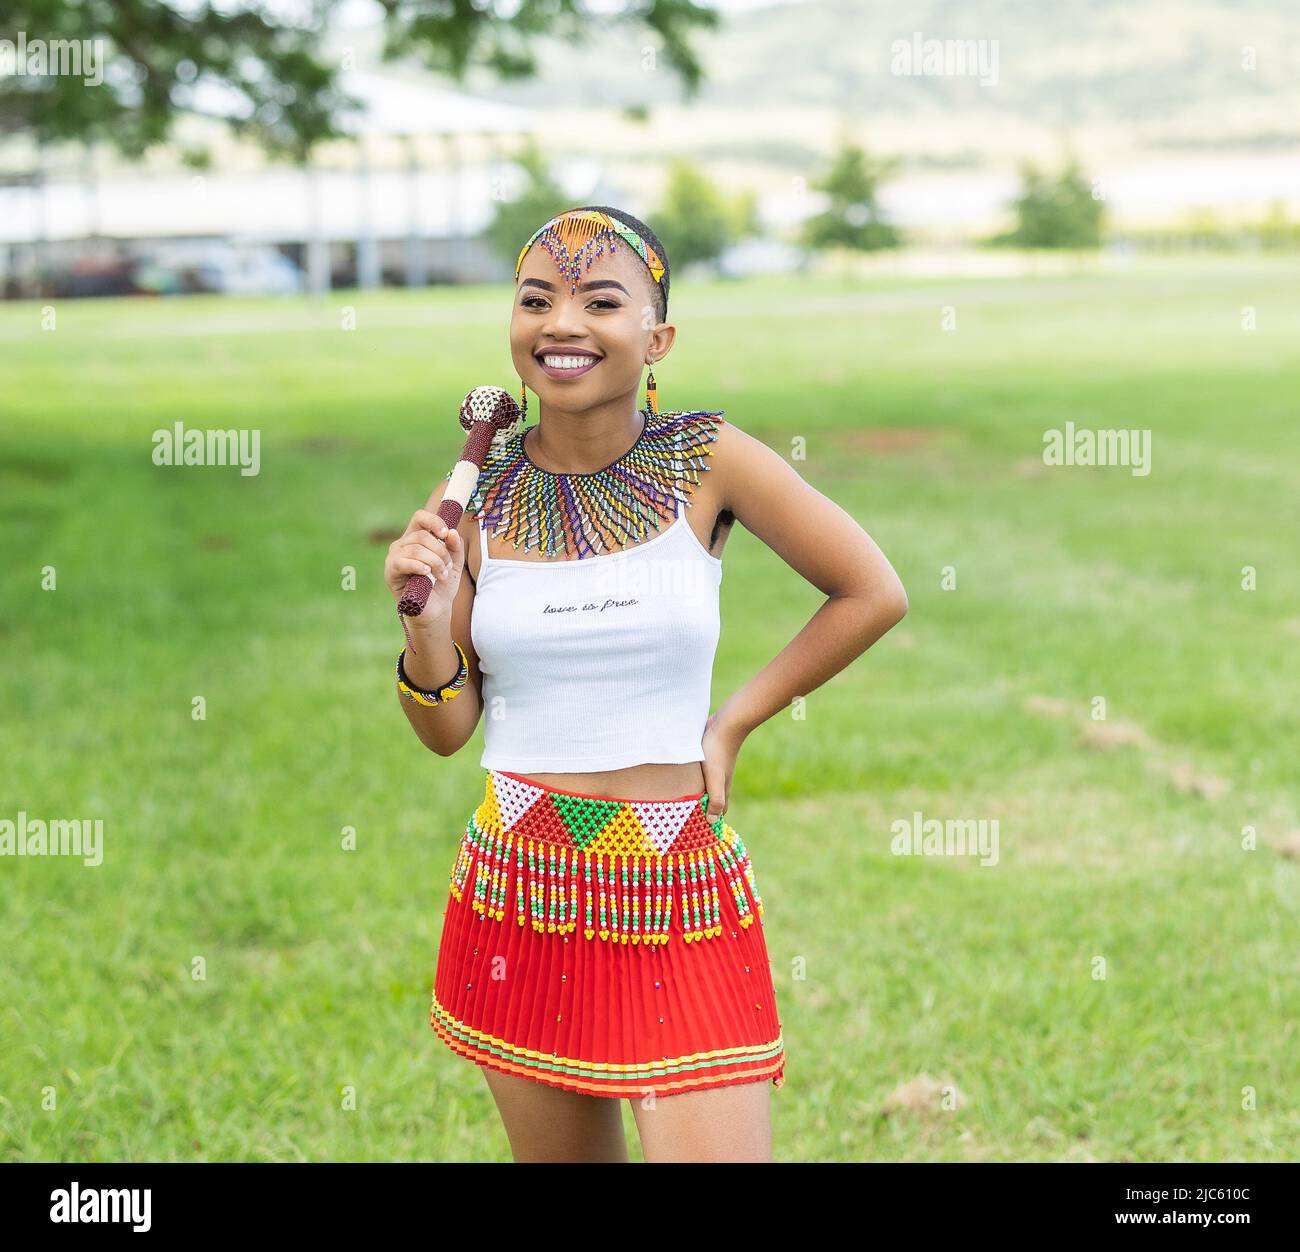 https://c8.alamy.com/comp/2JC610C/young-african-girl-wearing-zulu-clothing-2JC610C.jpg